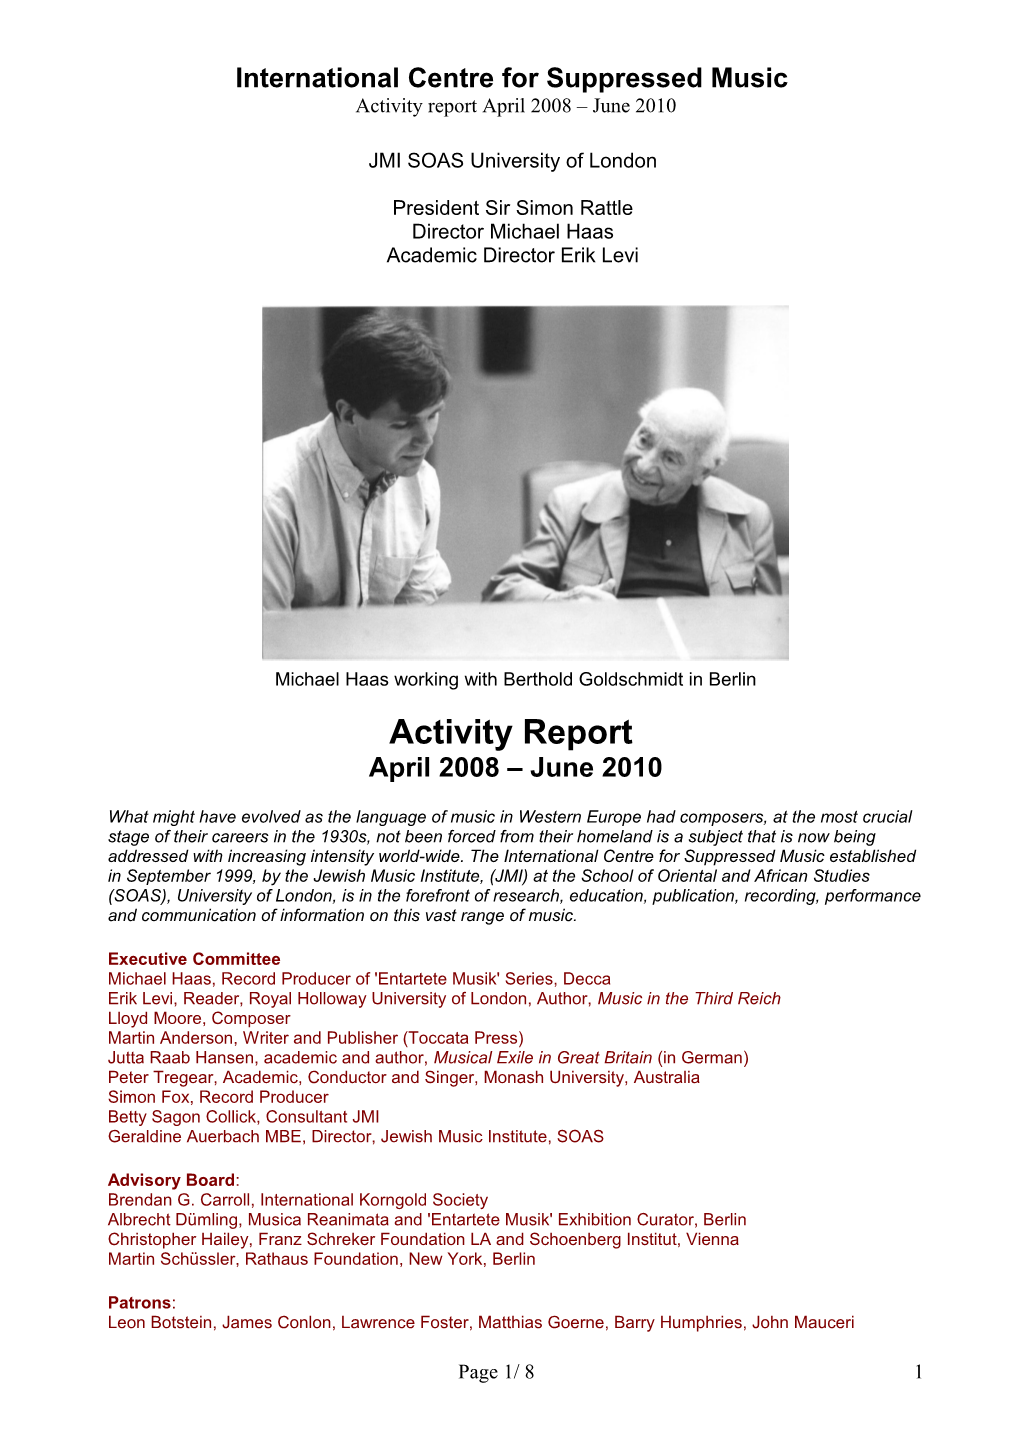 ICSM Activity Report April 2008 June 2010